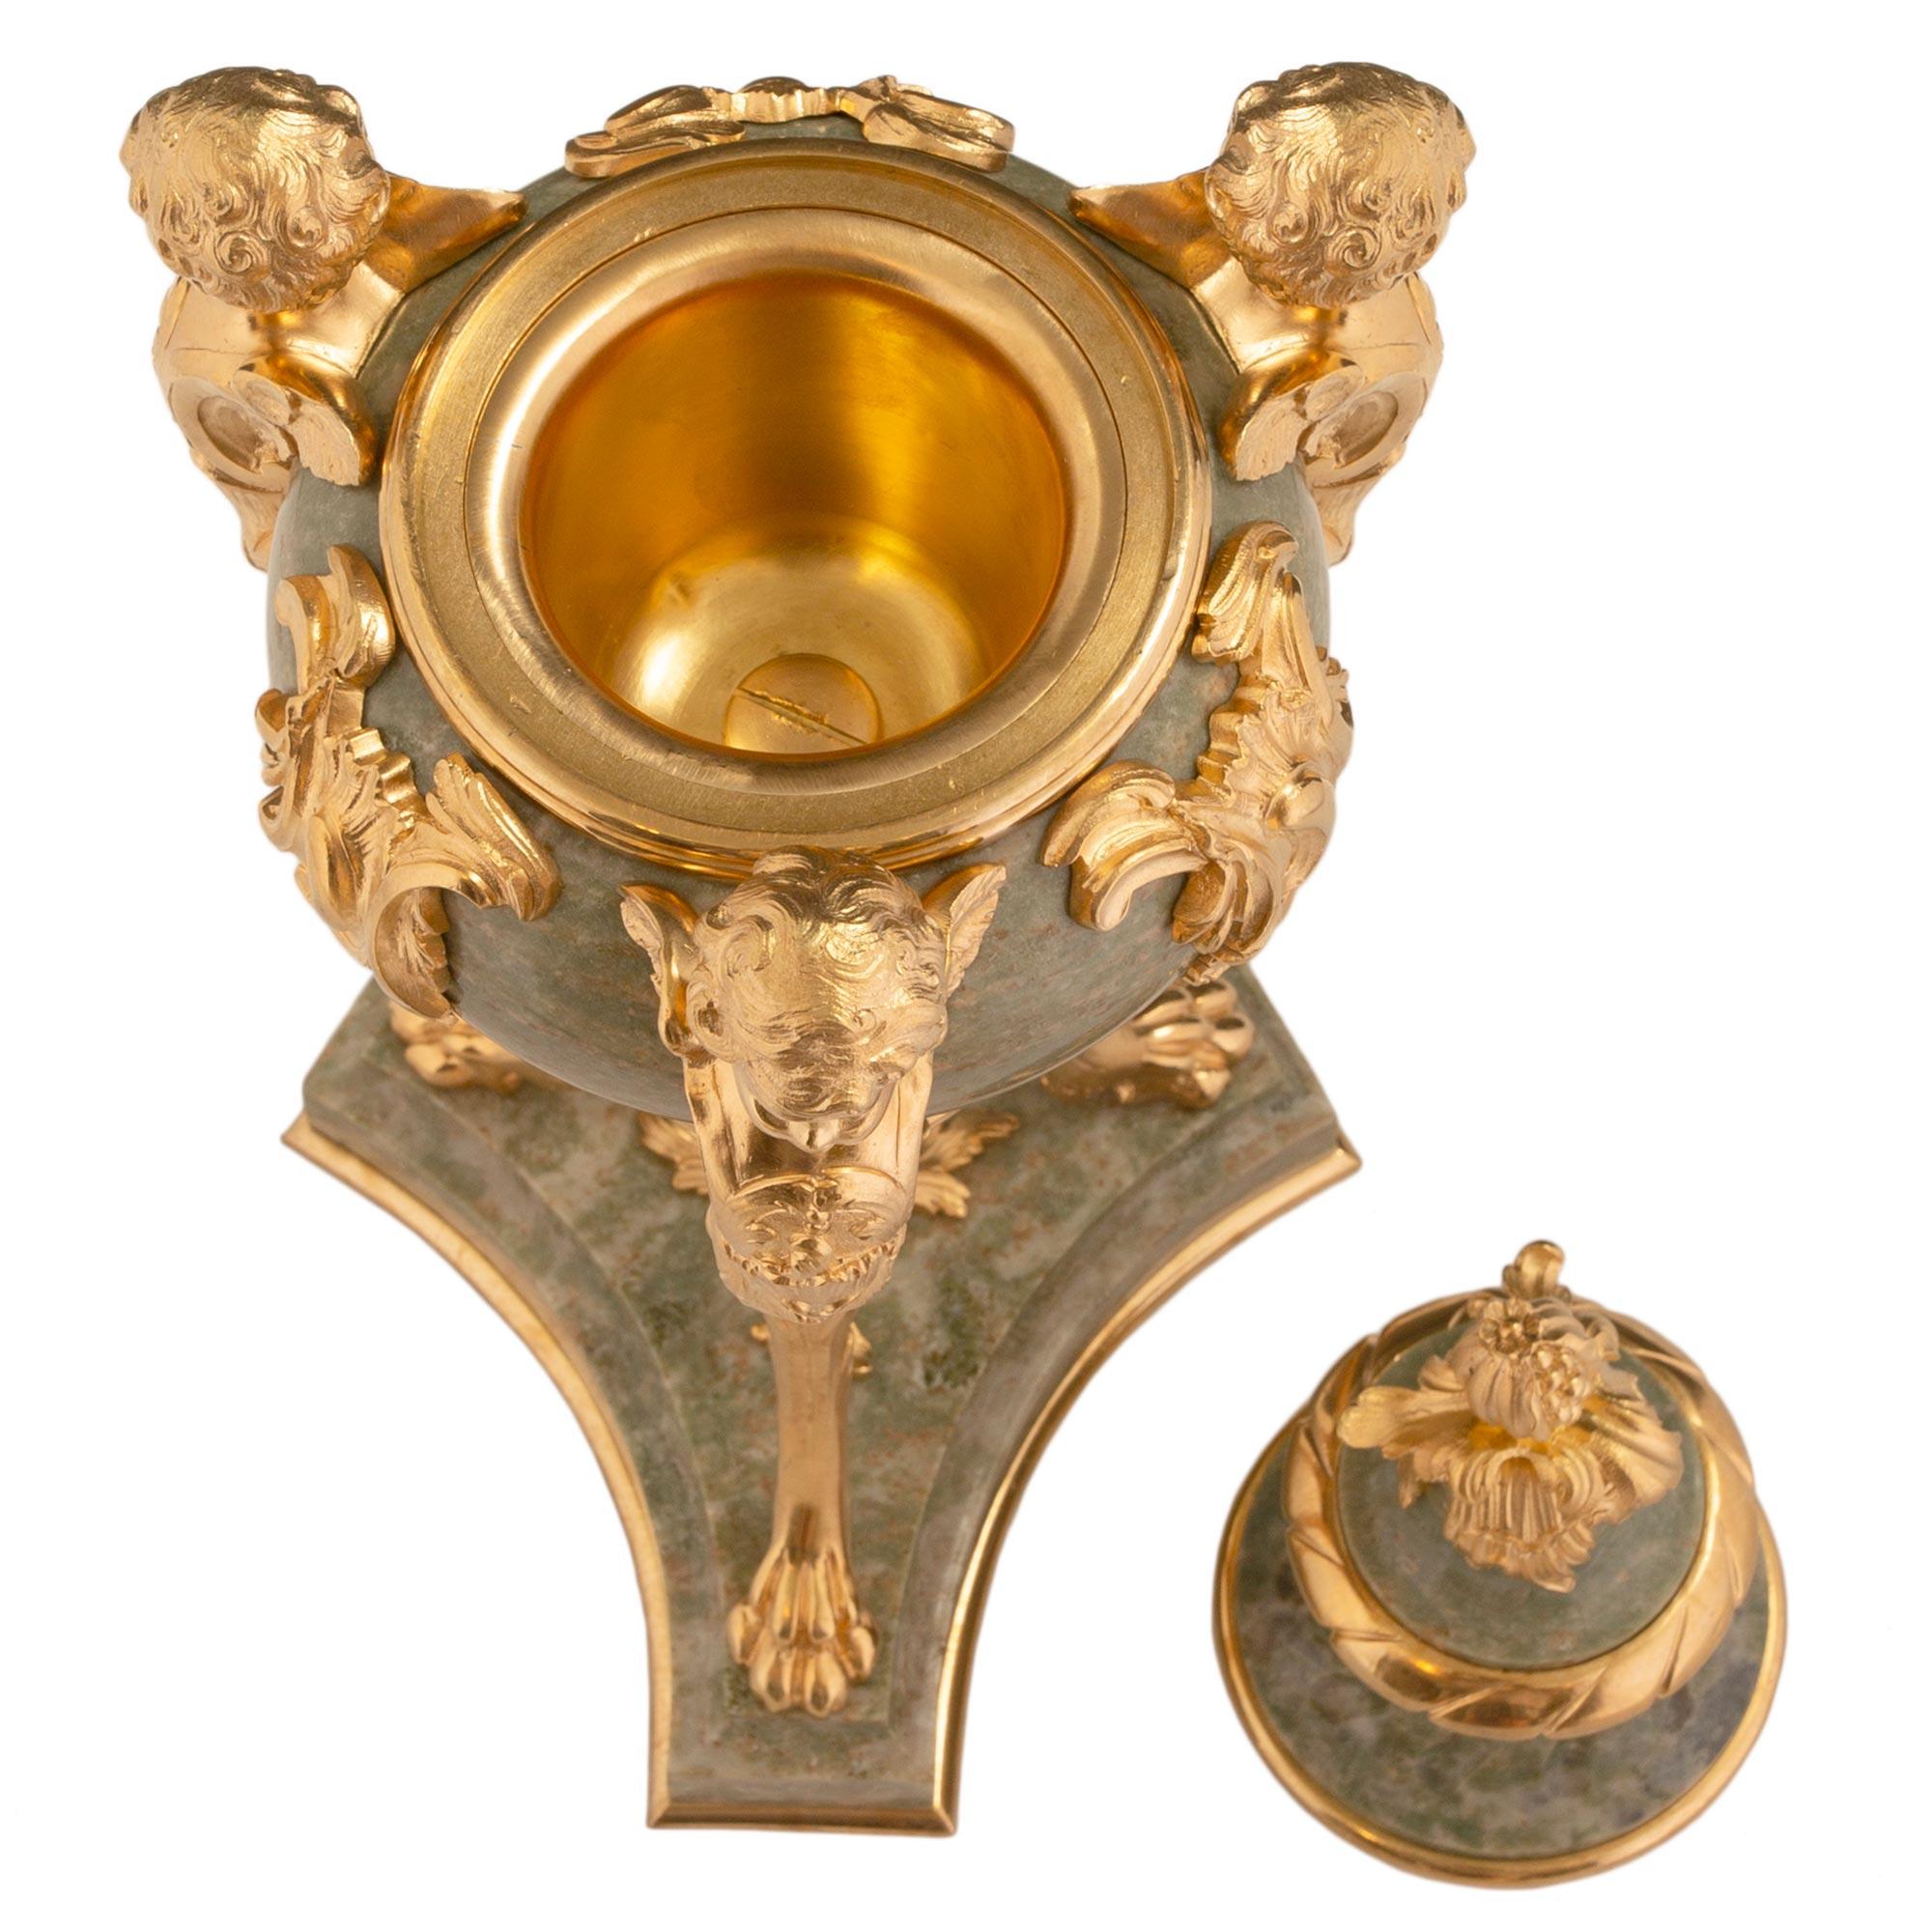 Une belle paire d'urnes à couvercle en marbre vert et bronze doré, de style Louis XVI, datant du 19e siècle. Chaque urne est surélevée par une base triangulaire aux côtés concaves et un fin filet de fond en bronze doré. Les trois supports situés